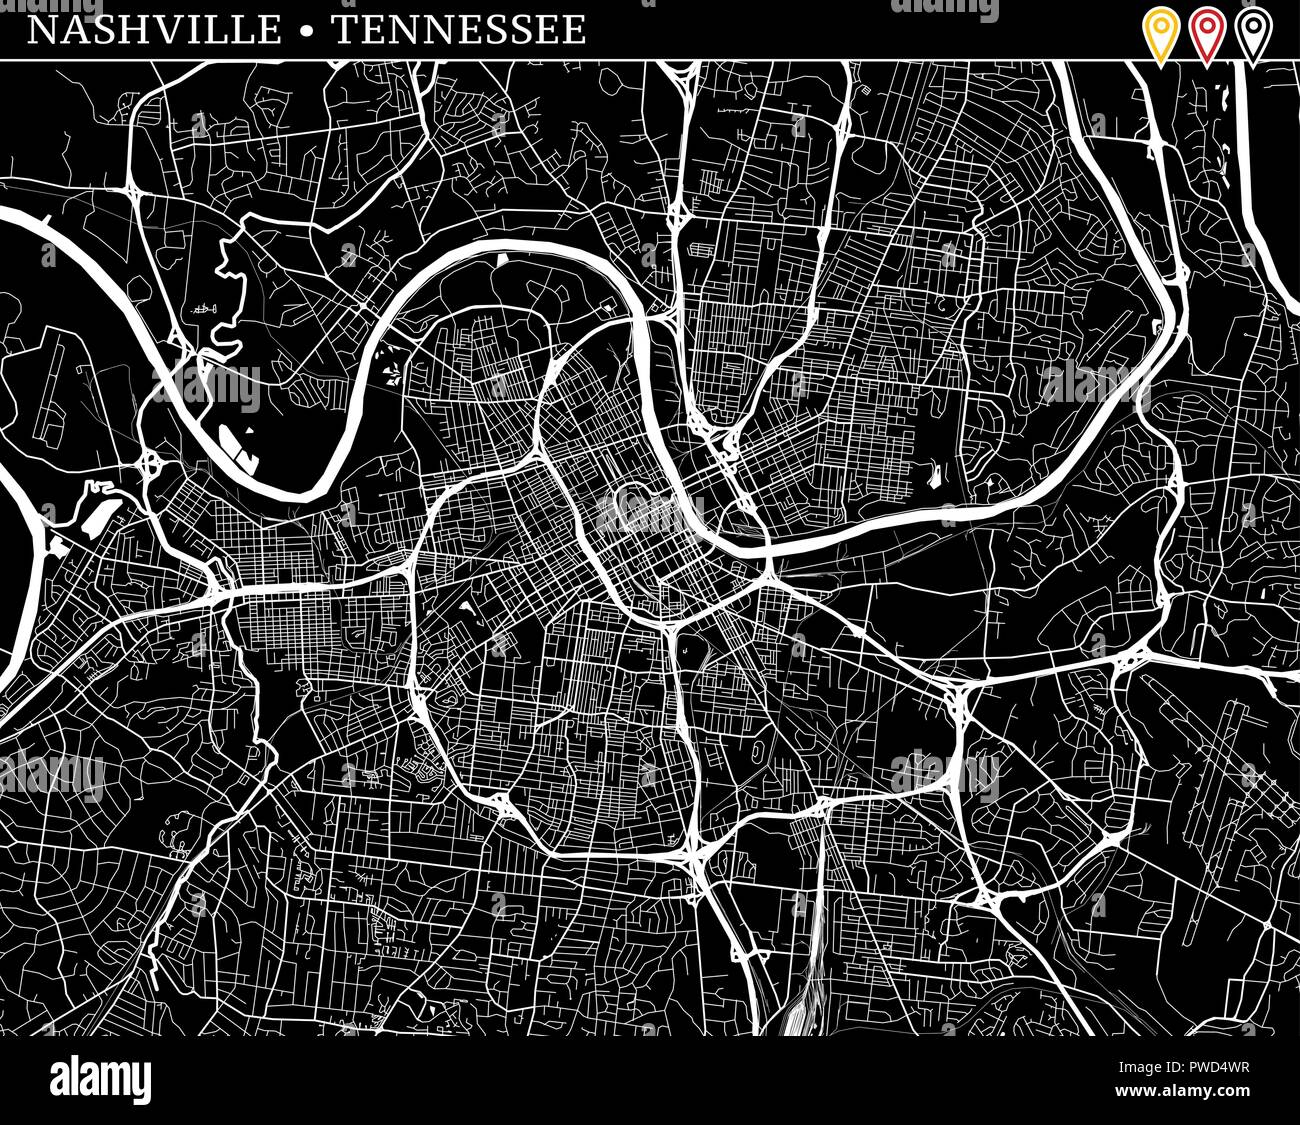 Einfache Karte von Nashville, Tennessee, USA. Schwarze und weiße Version für saubere Hintergründe und druckt. Diese Karte von Nashville enthält drei Markierungen, die Ar Stock Vektor